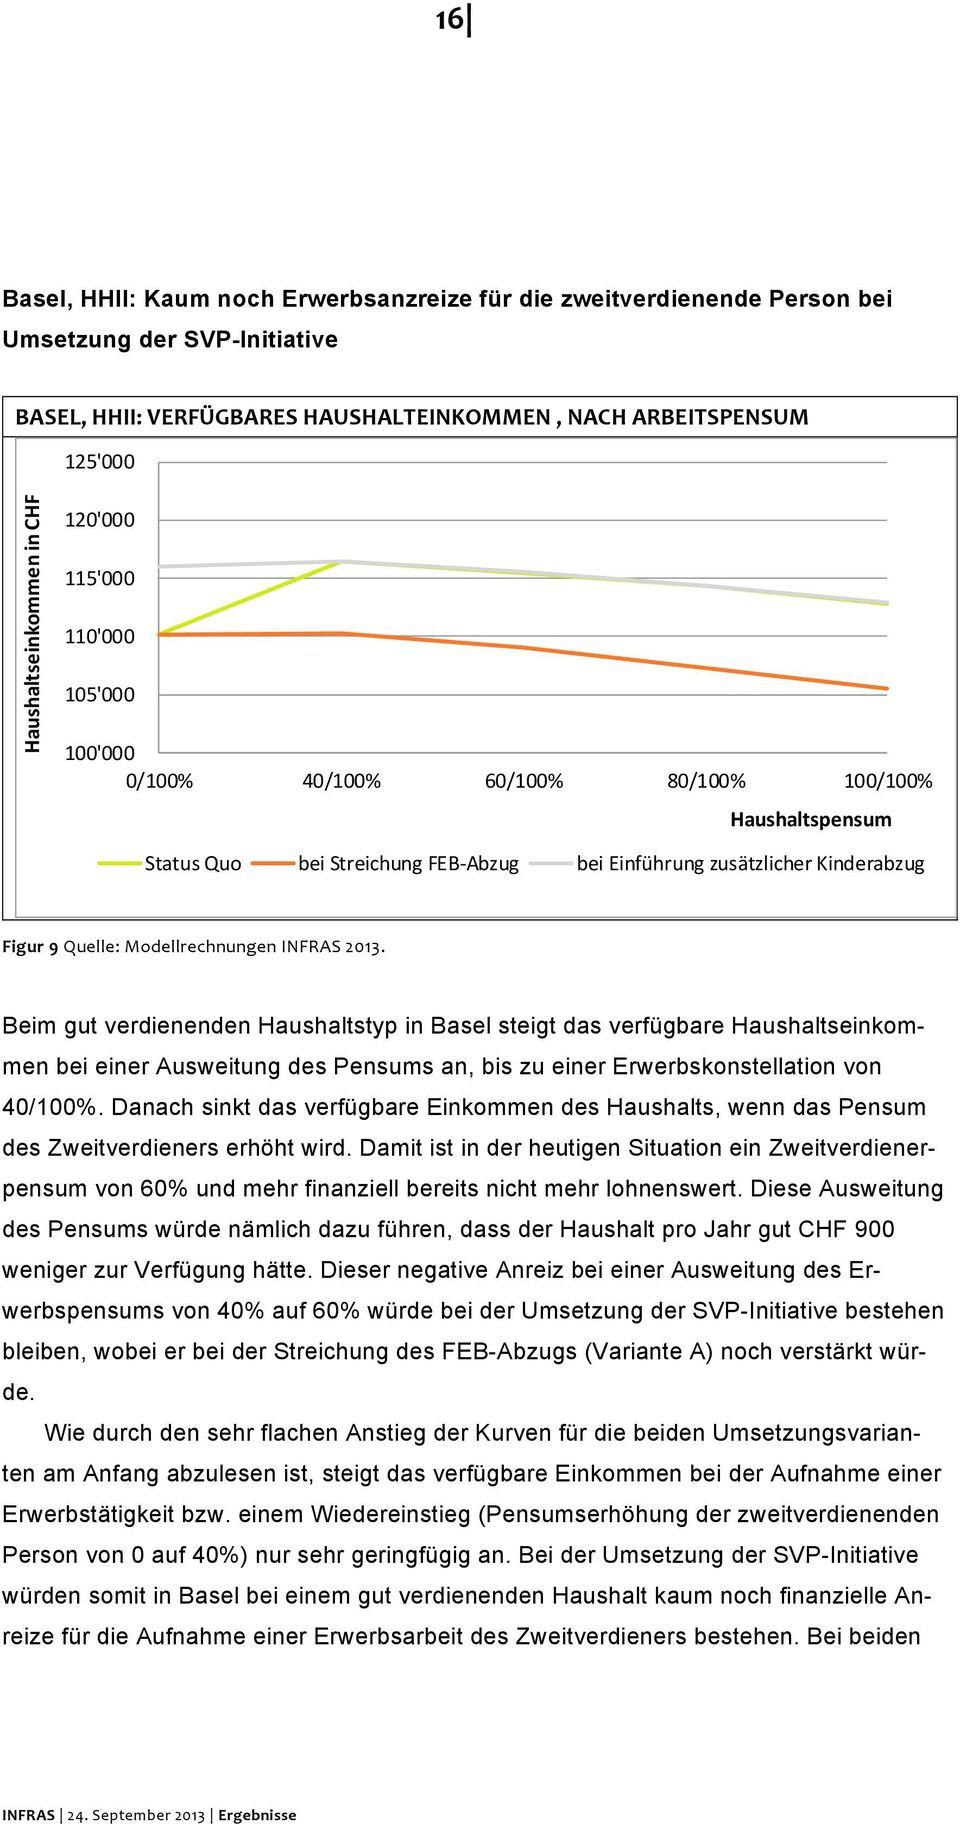 Modellrechnungen INFRAS 2013. Beim gut verdienenden Haushaltstyp in Basel steigt das verfügbare Haushaltseinkommen bei einer Ausweitung des Pensums an, bis zu einer Erwerbskonstellation von 40/100%.